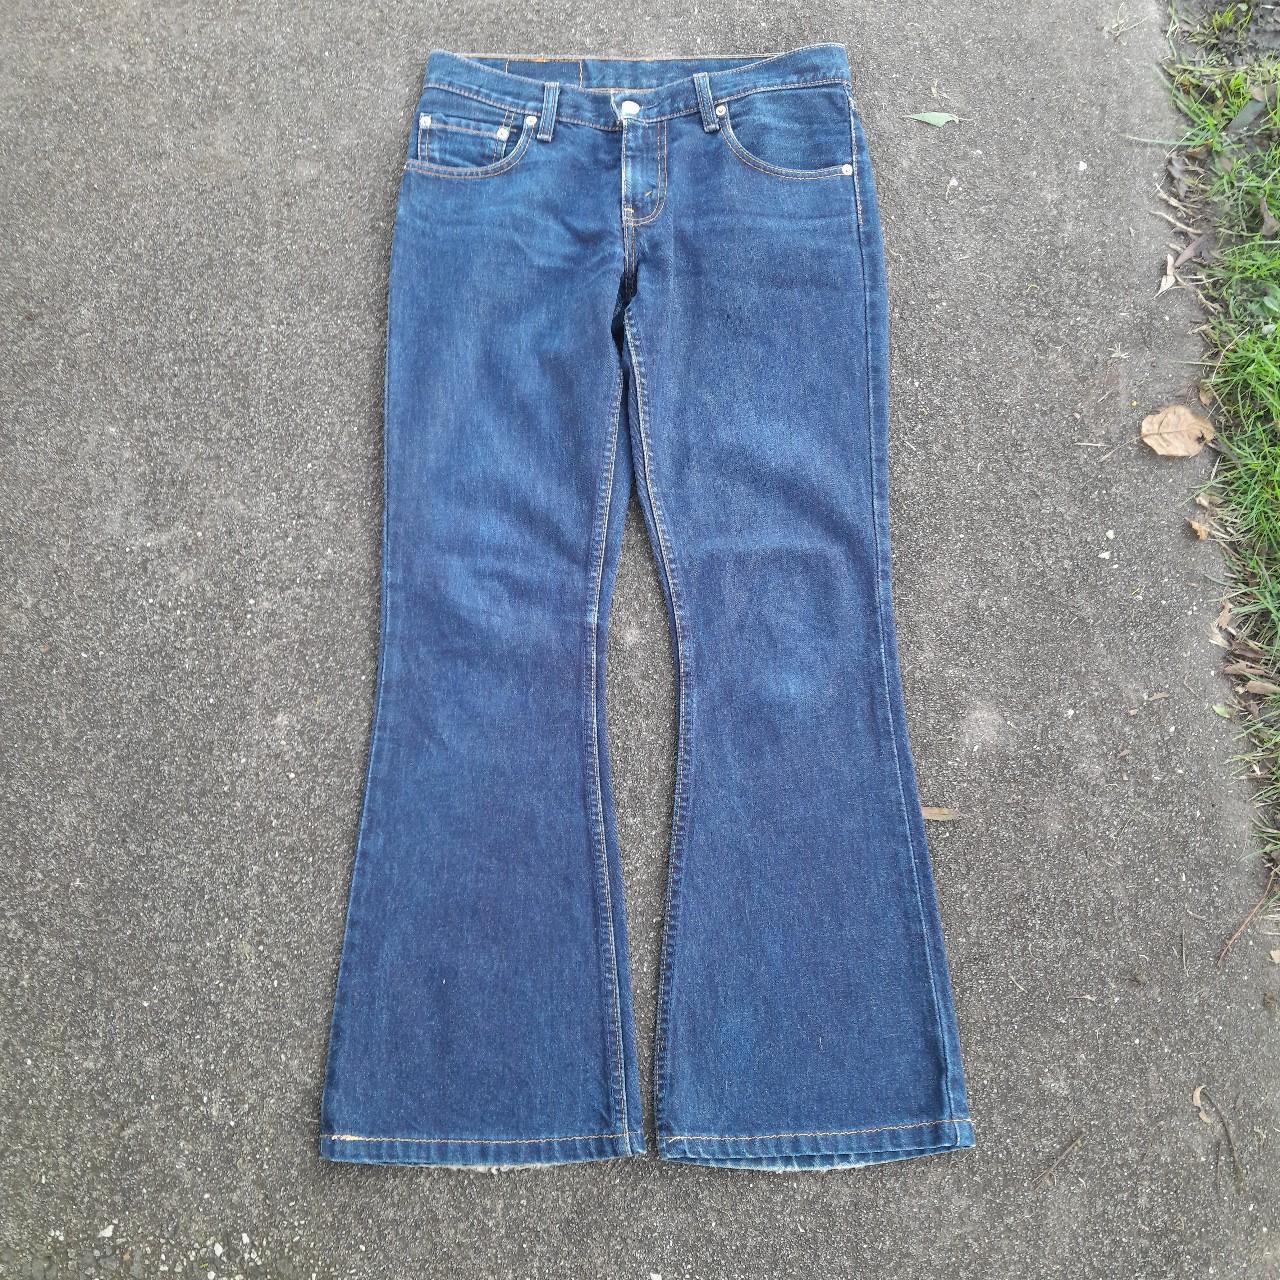 Vintage 1990’s Levi’s 450 flared jeans with regular... - Depop